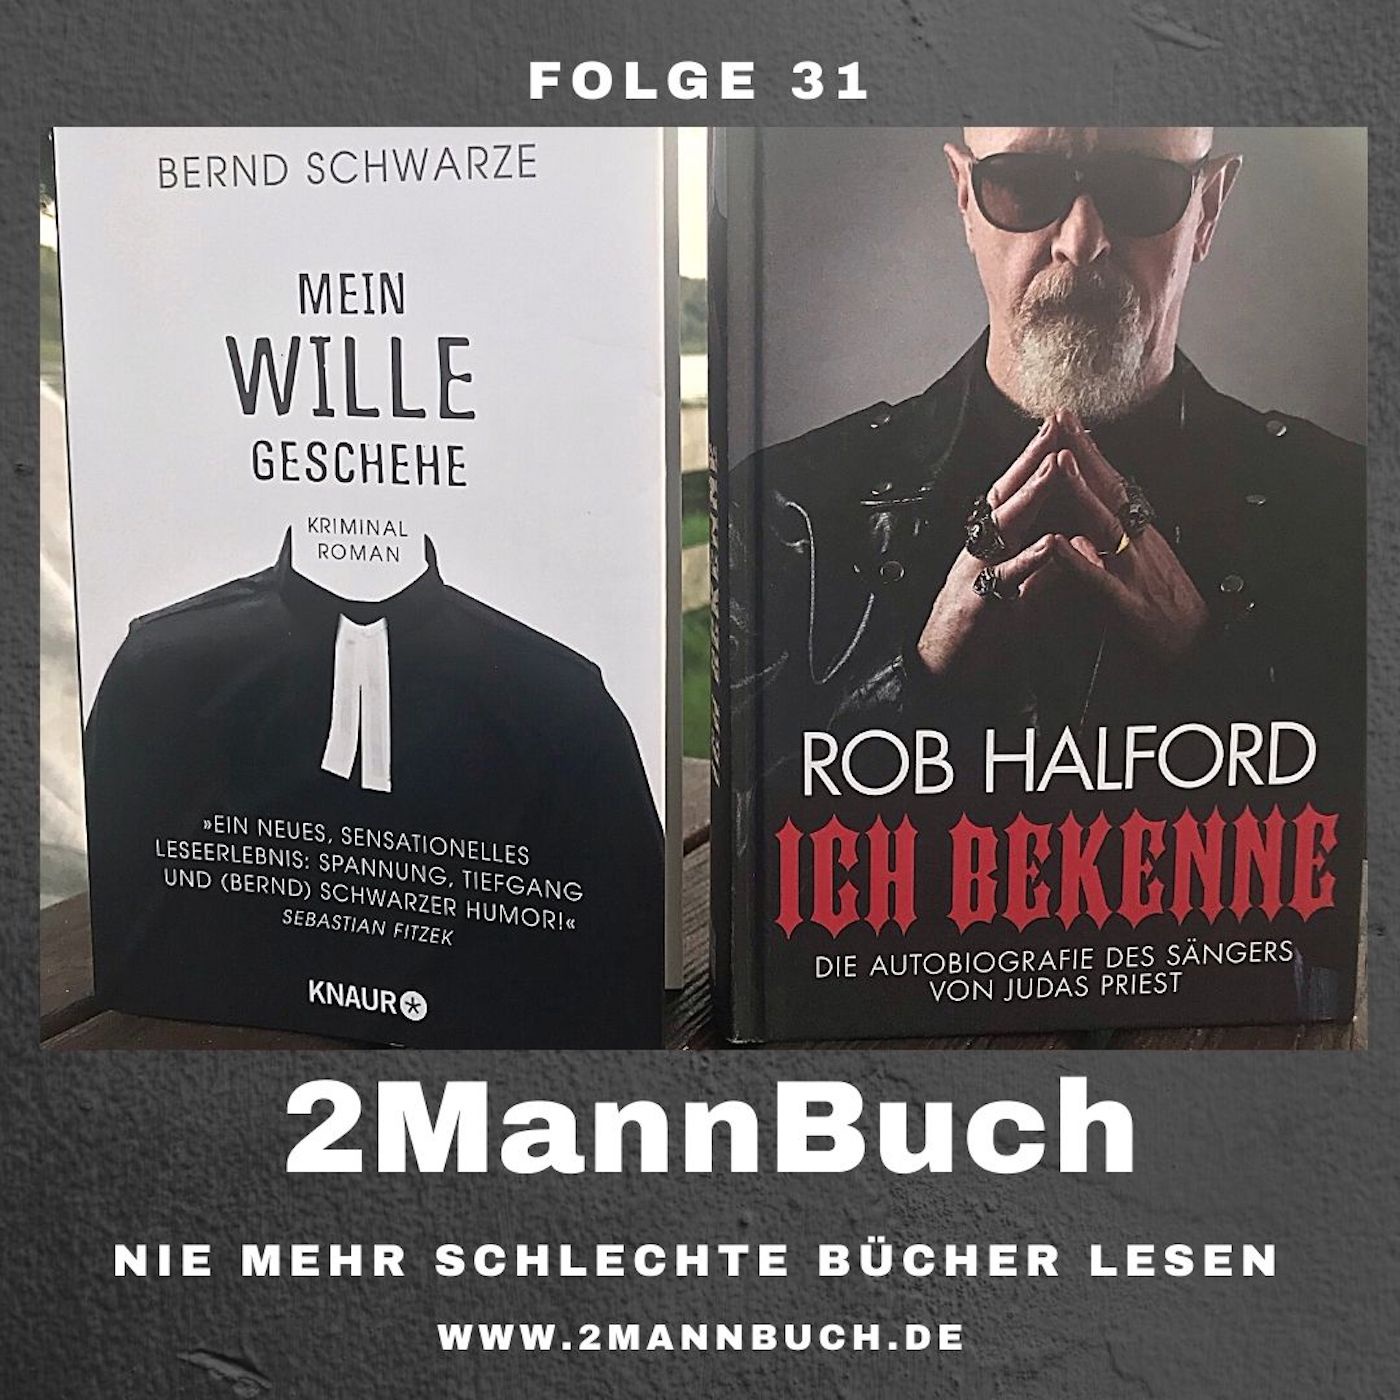 Folge 31 mit Rob Halford und Bernd Schwarze